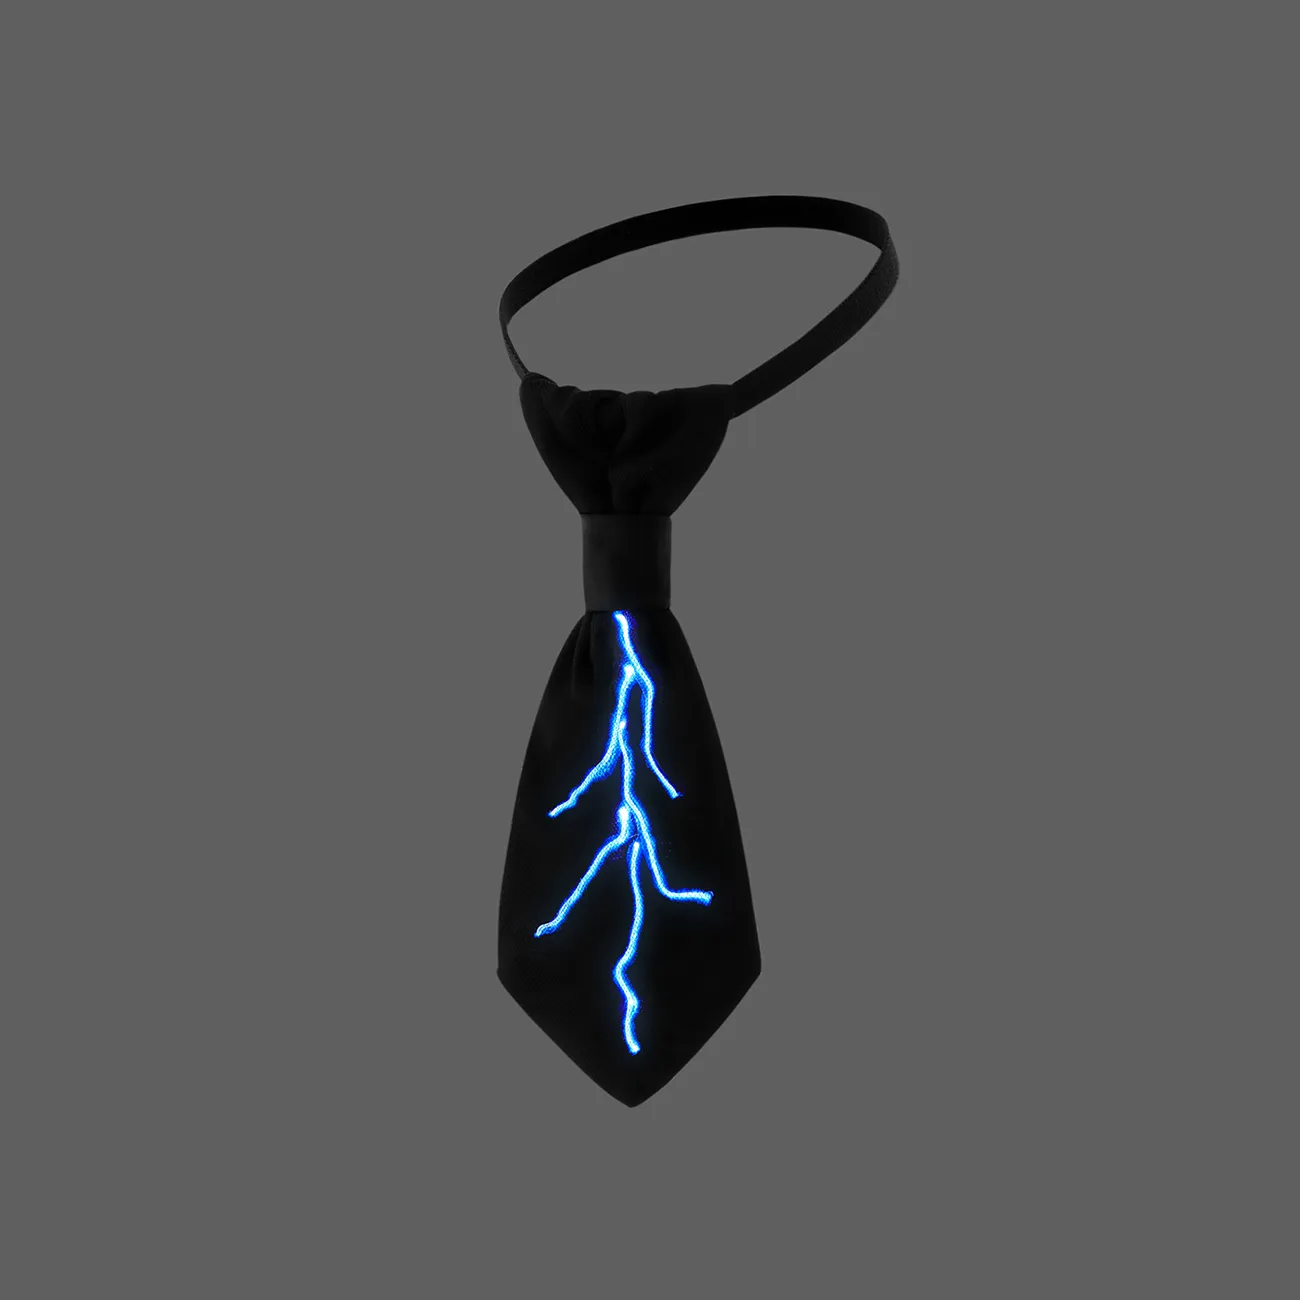 vorgebundene Krawatte in Blitzform mit Beleuchtung für kleine Jungen schwarz big image 1